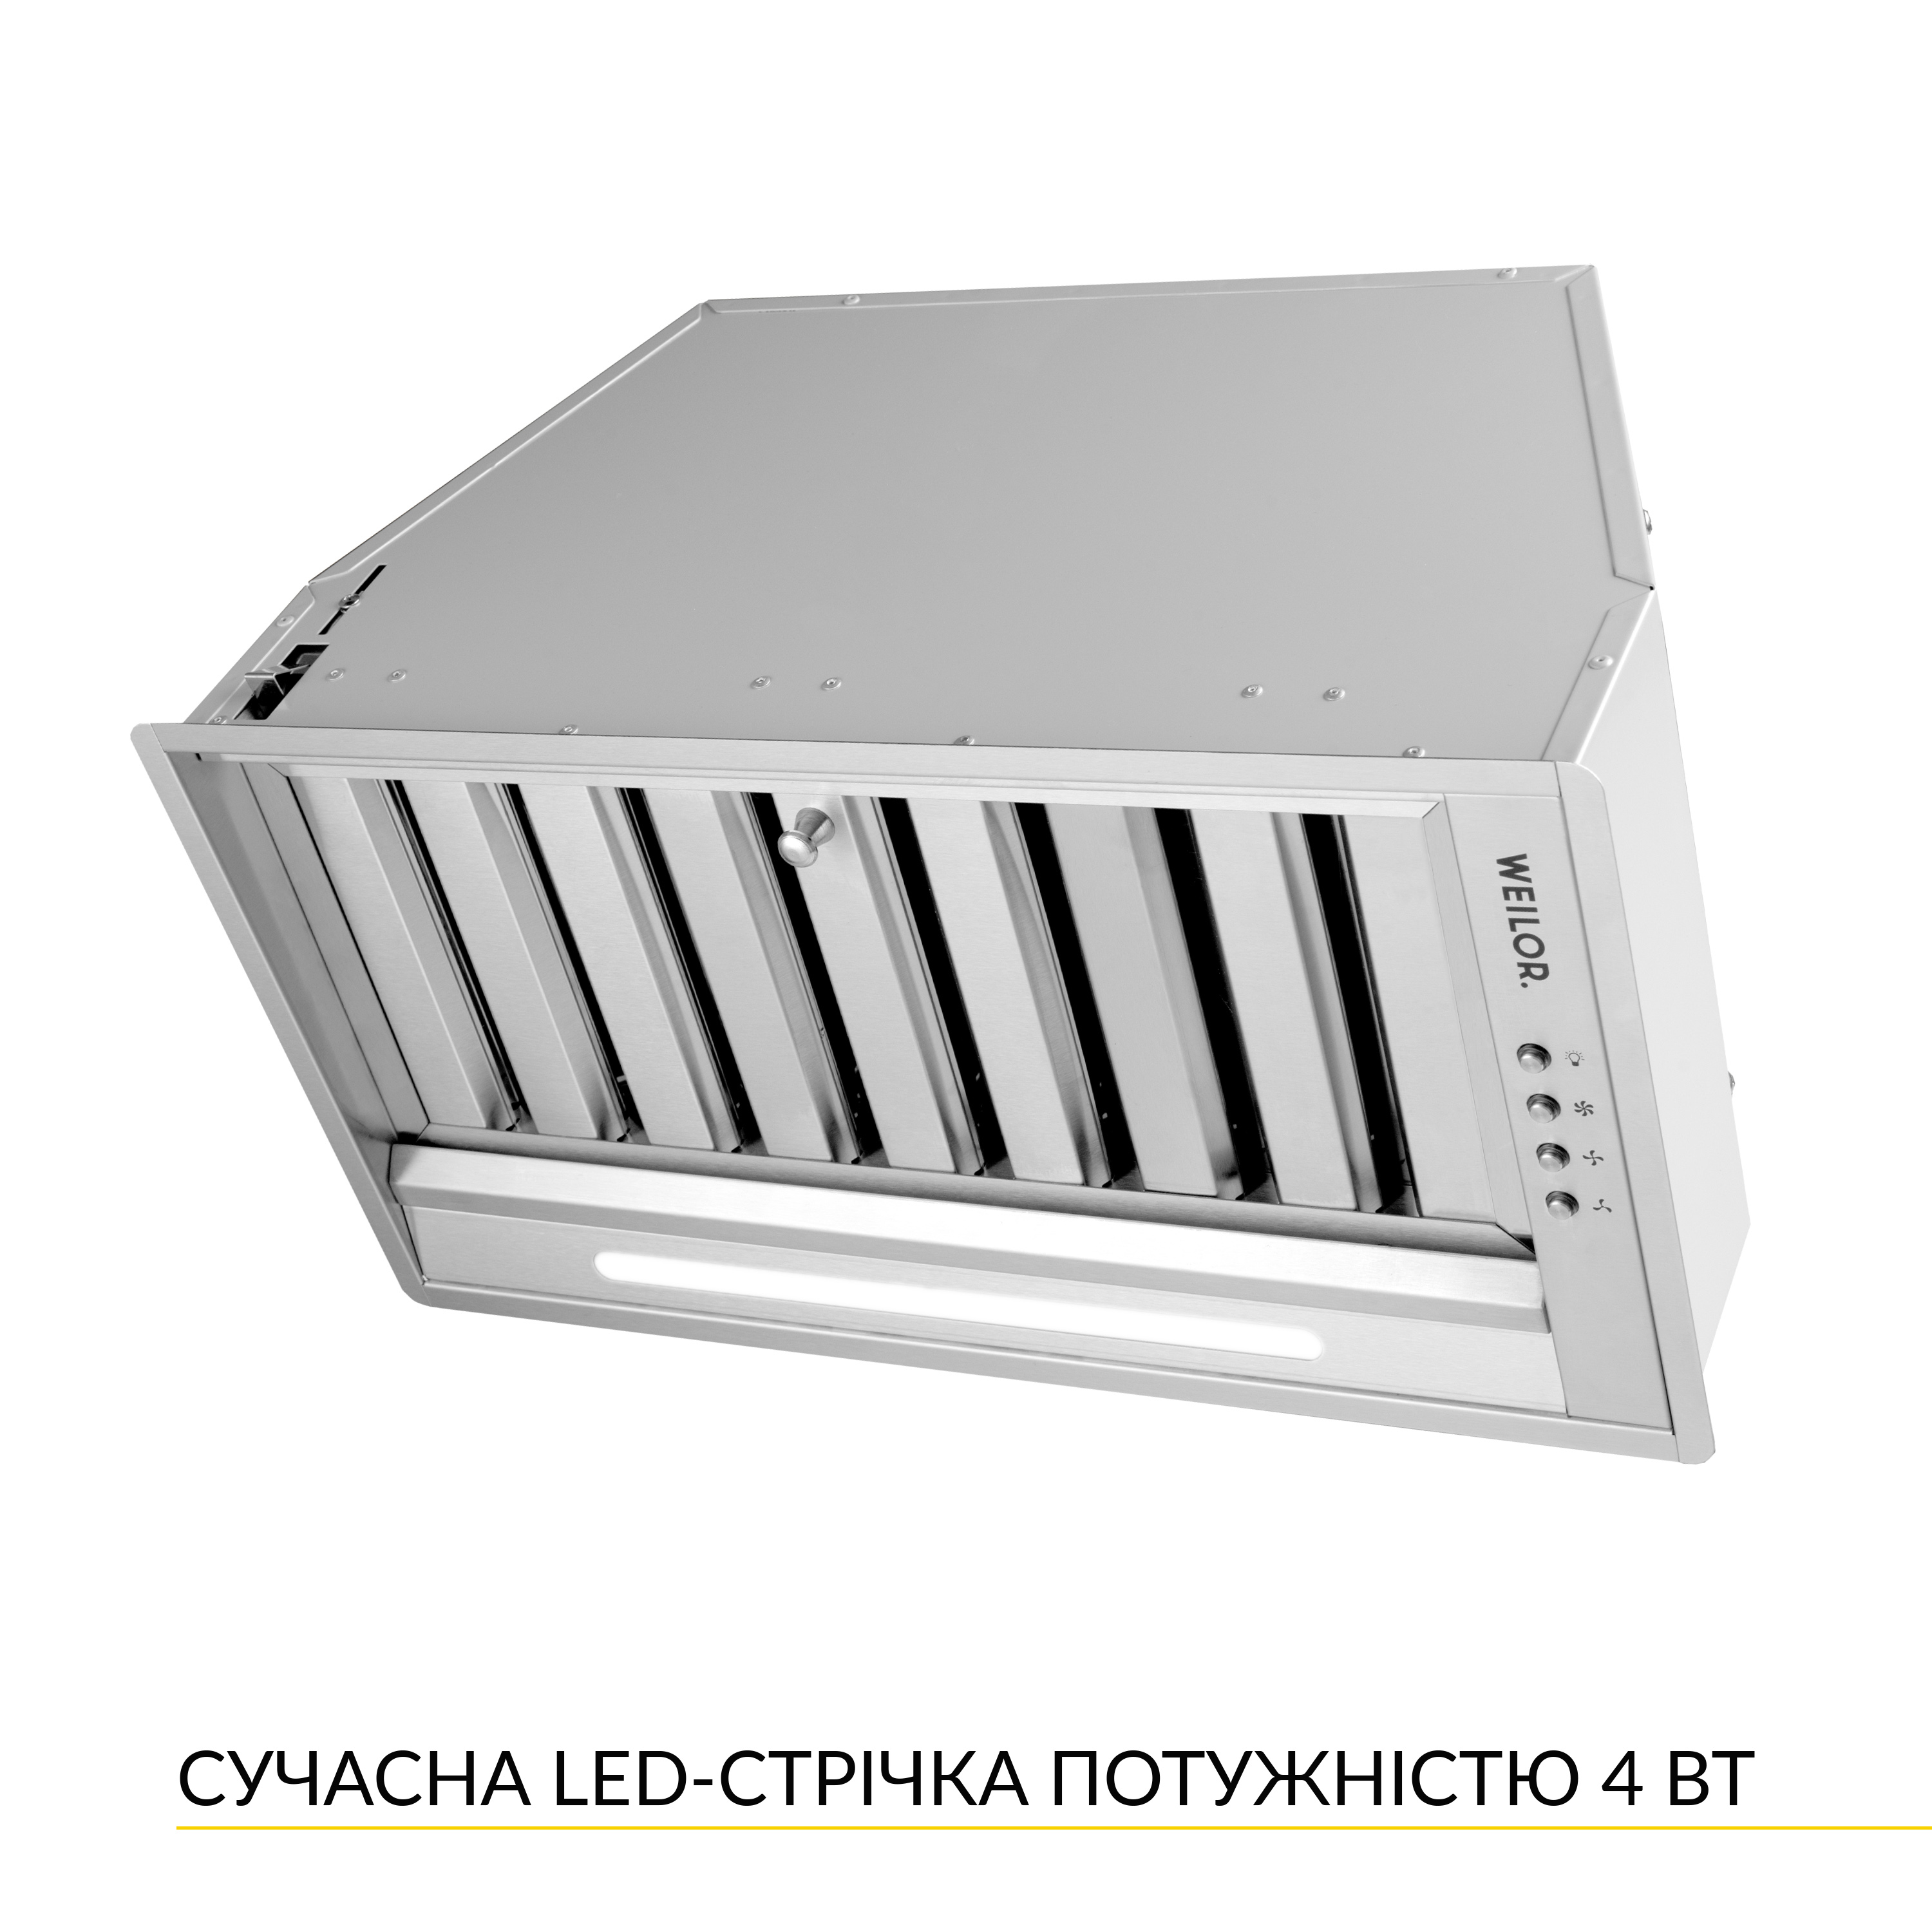 продаємо Weilor PPE 5265 SS 1250 LED Strip в Україні - фото 4